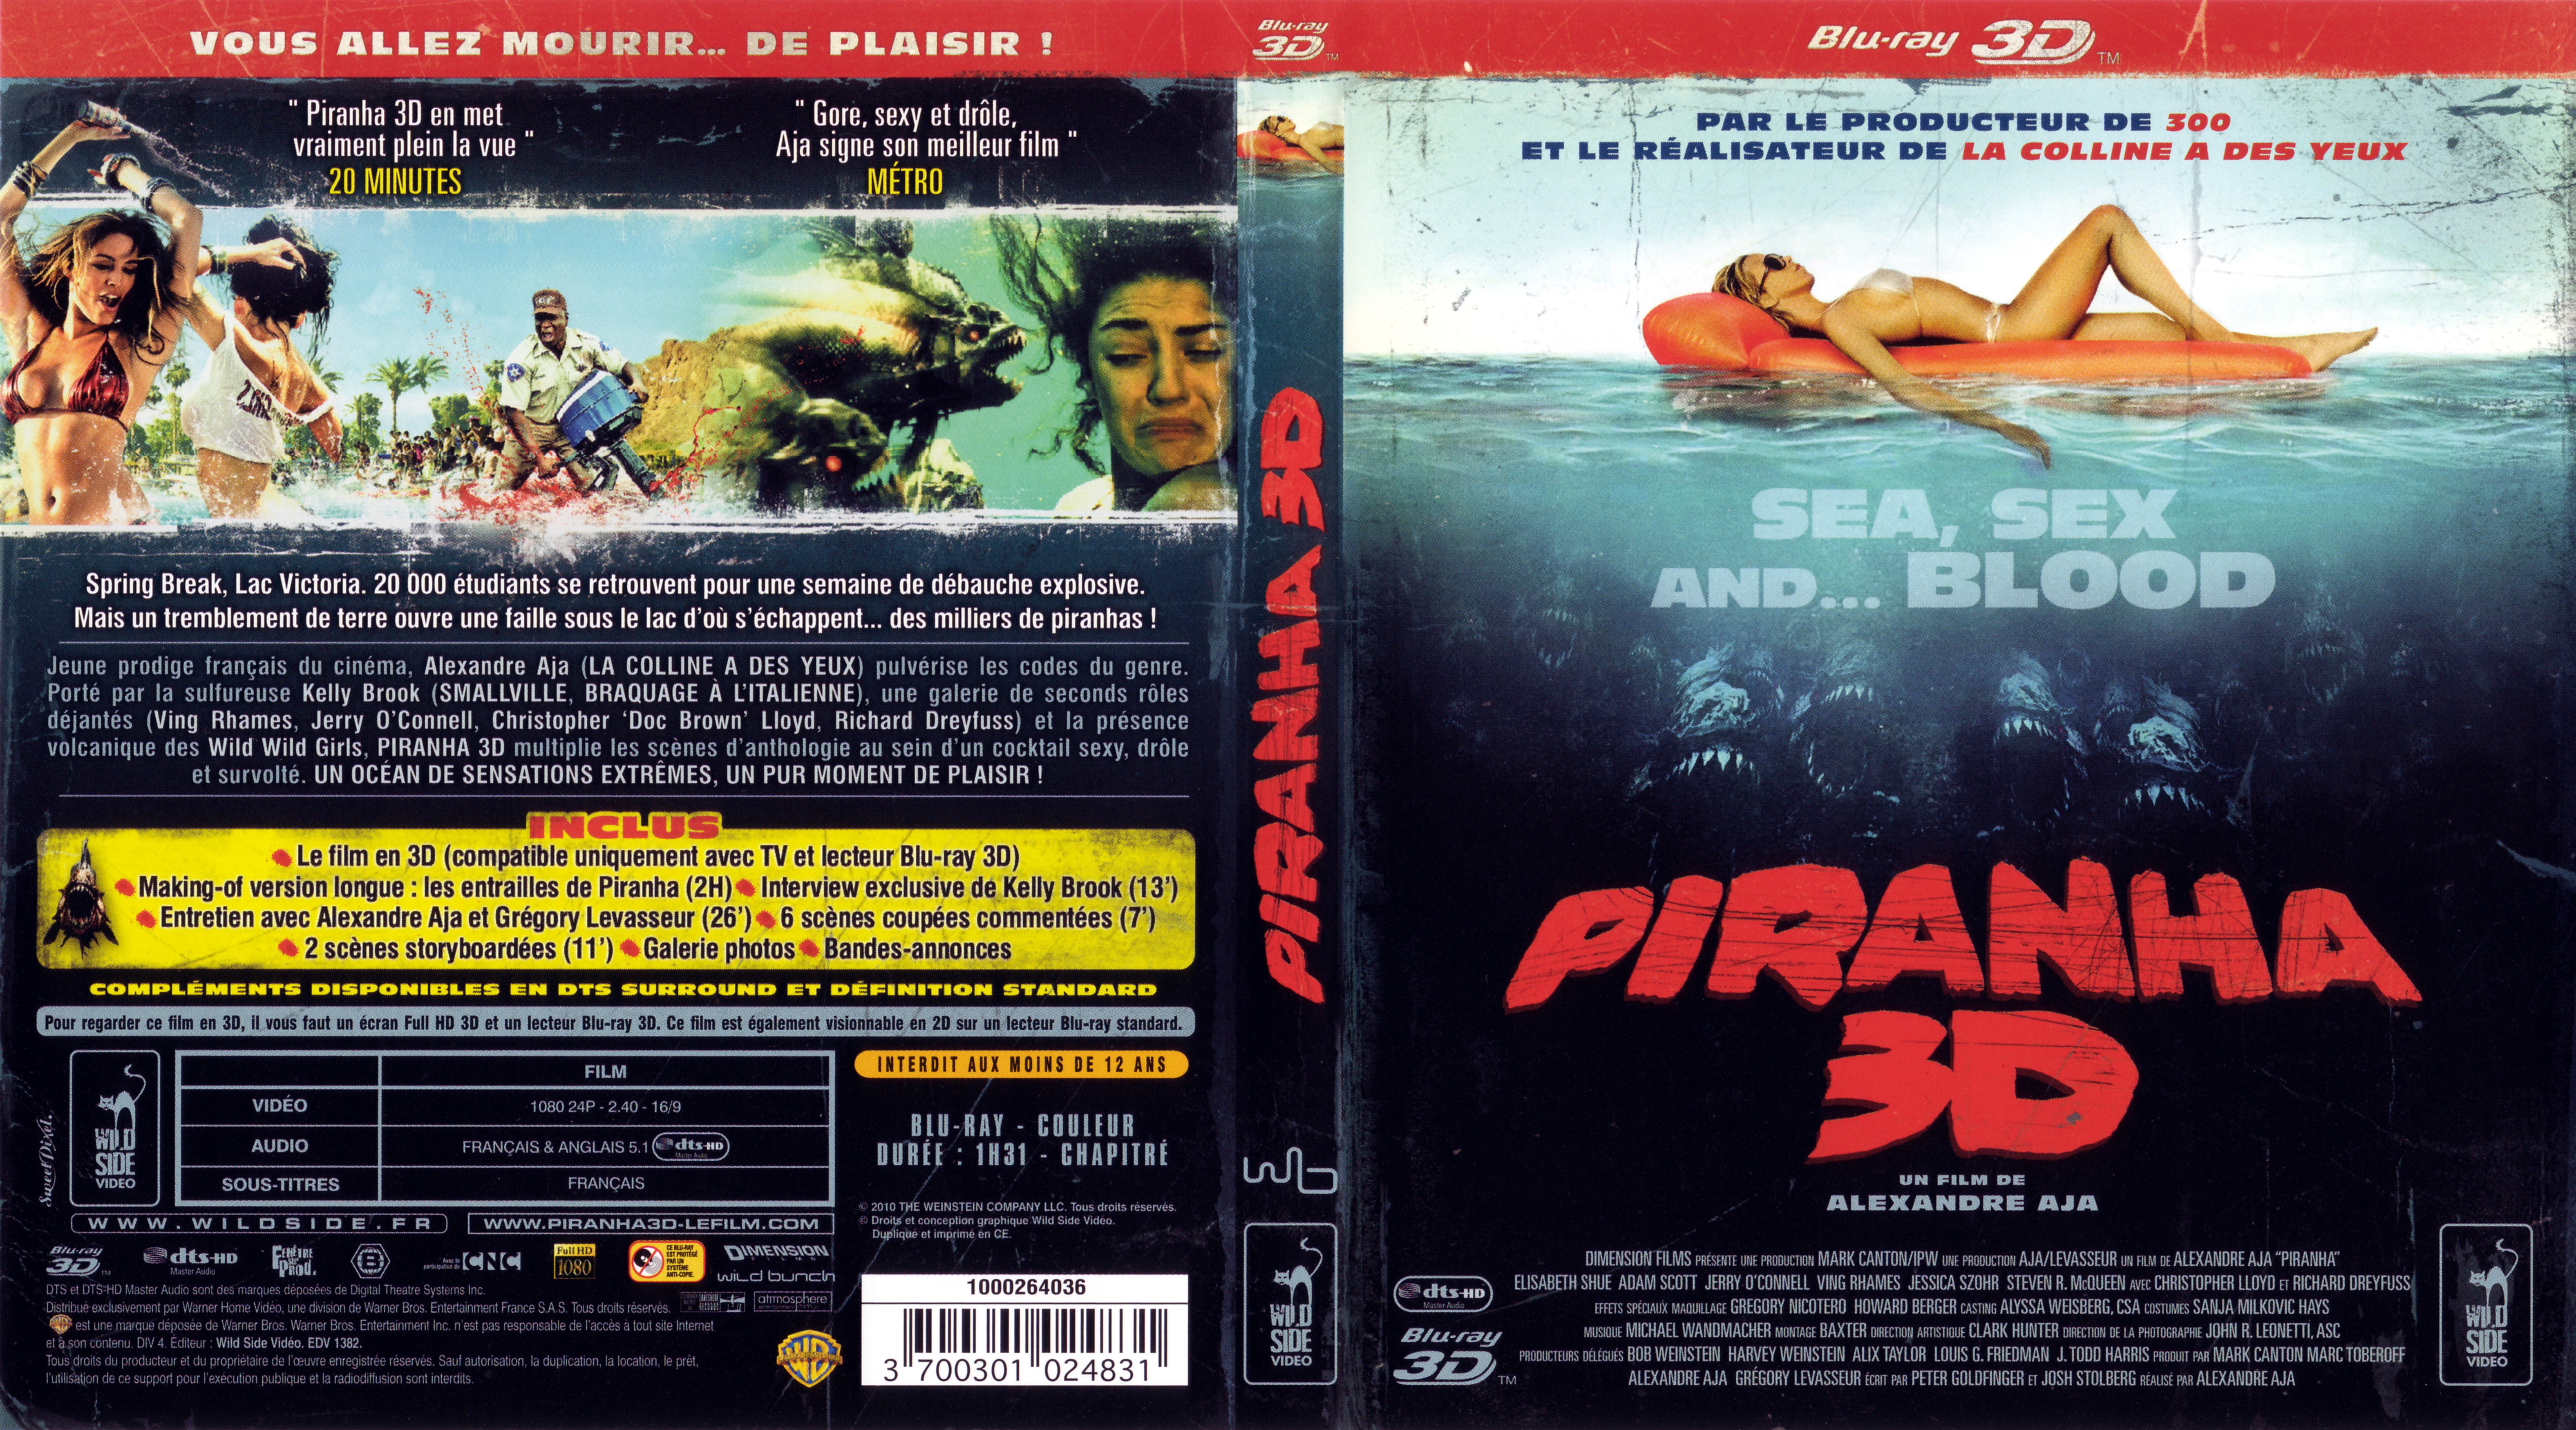 Jaquette DVD Piranha 3D (BLU-RAY) v3